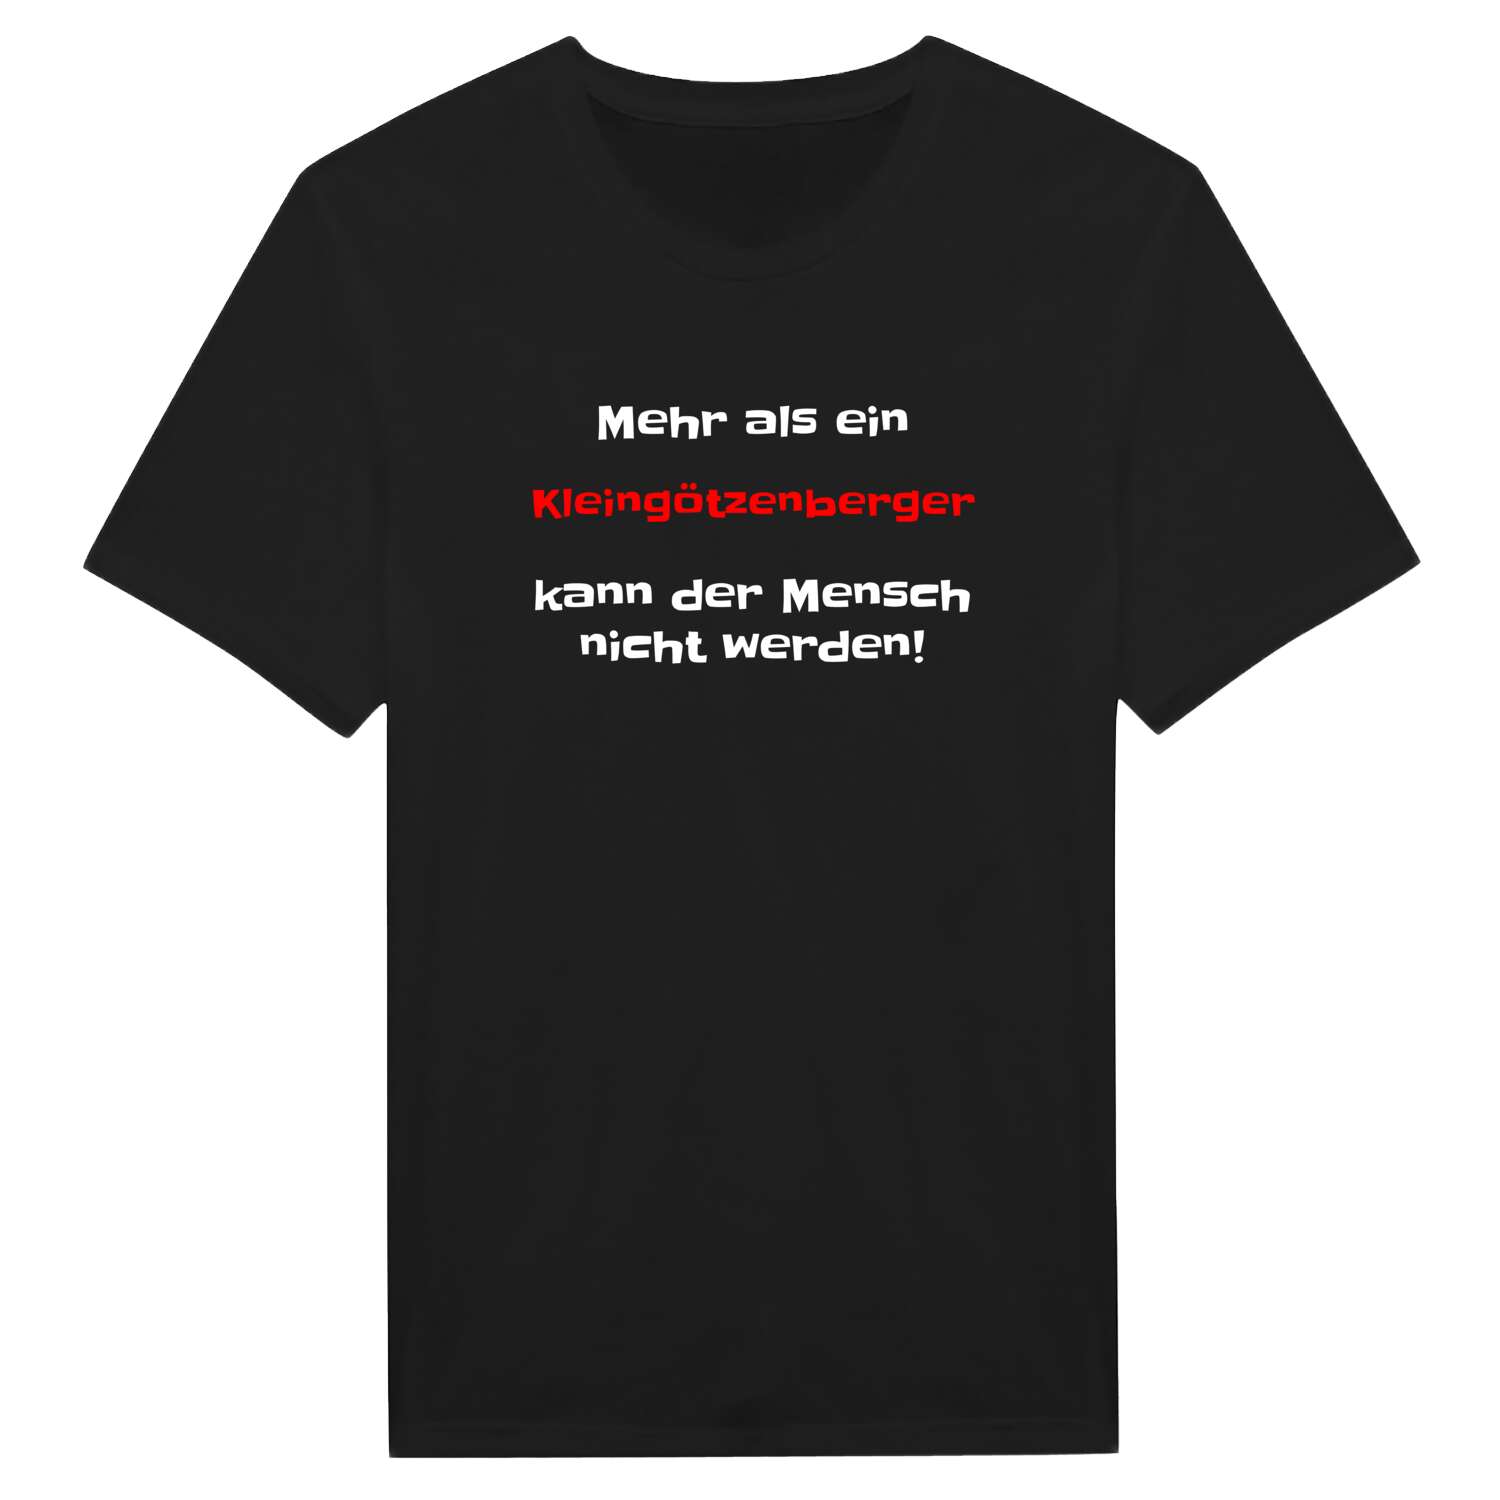 Kleingötzenberg T-Shirt »Mehr als ein«